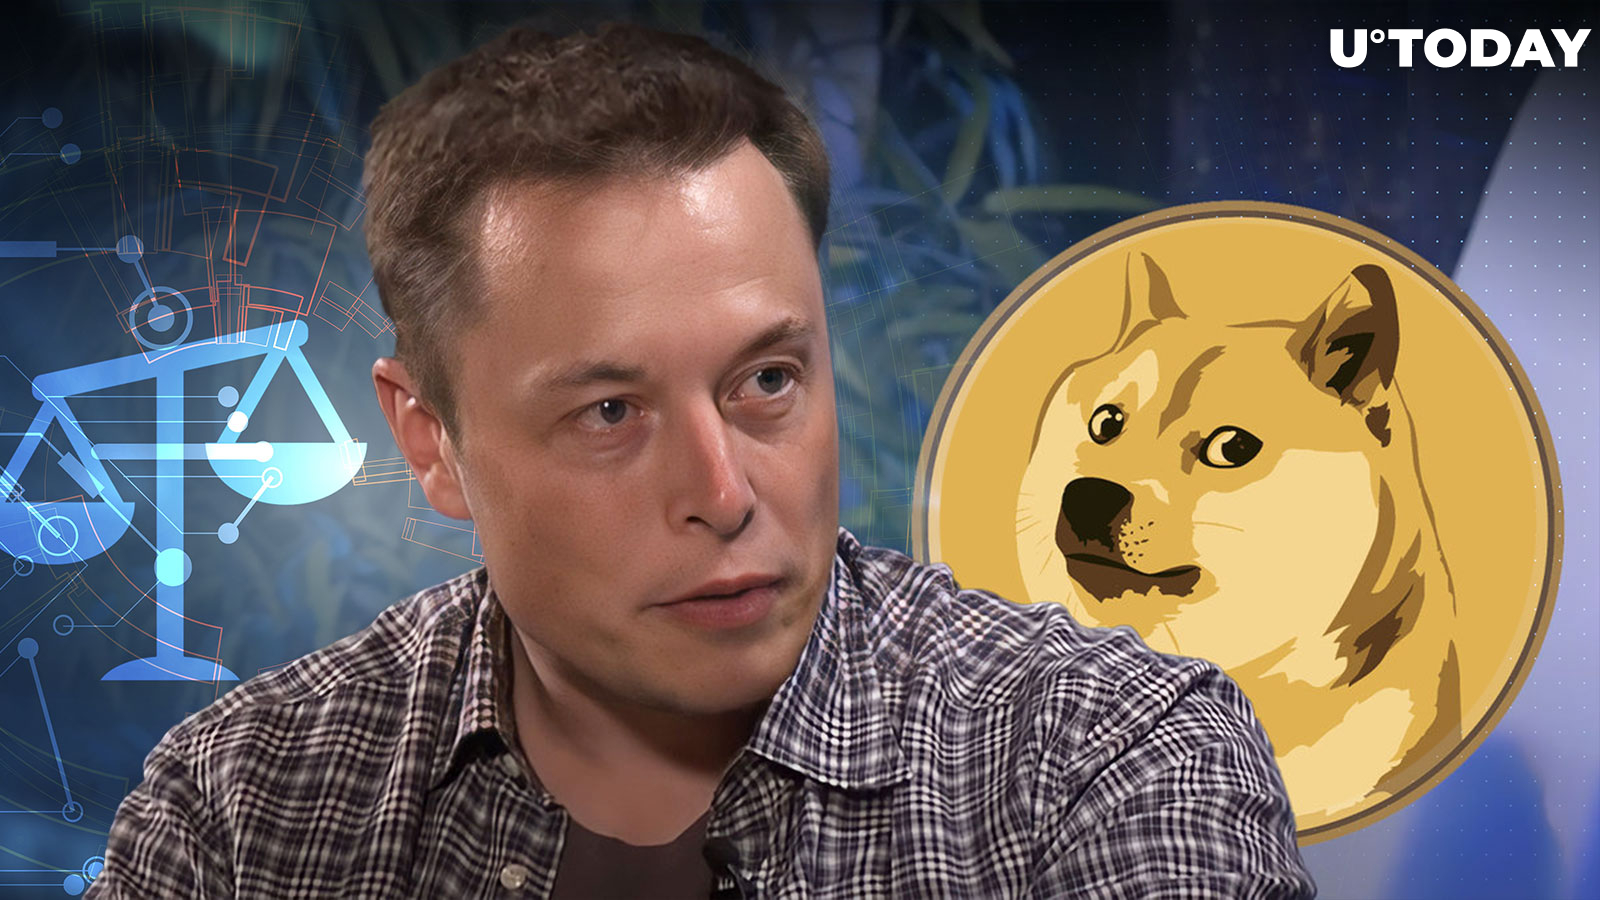 Dogecoin Plaintiffs Move Against Musk After Leak: Reuters